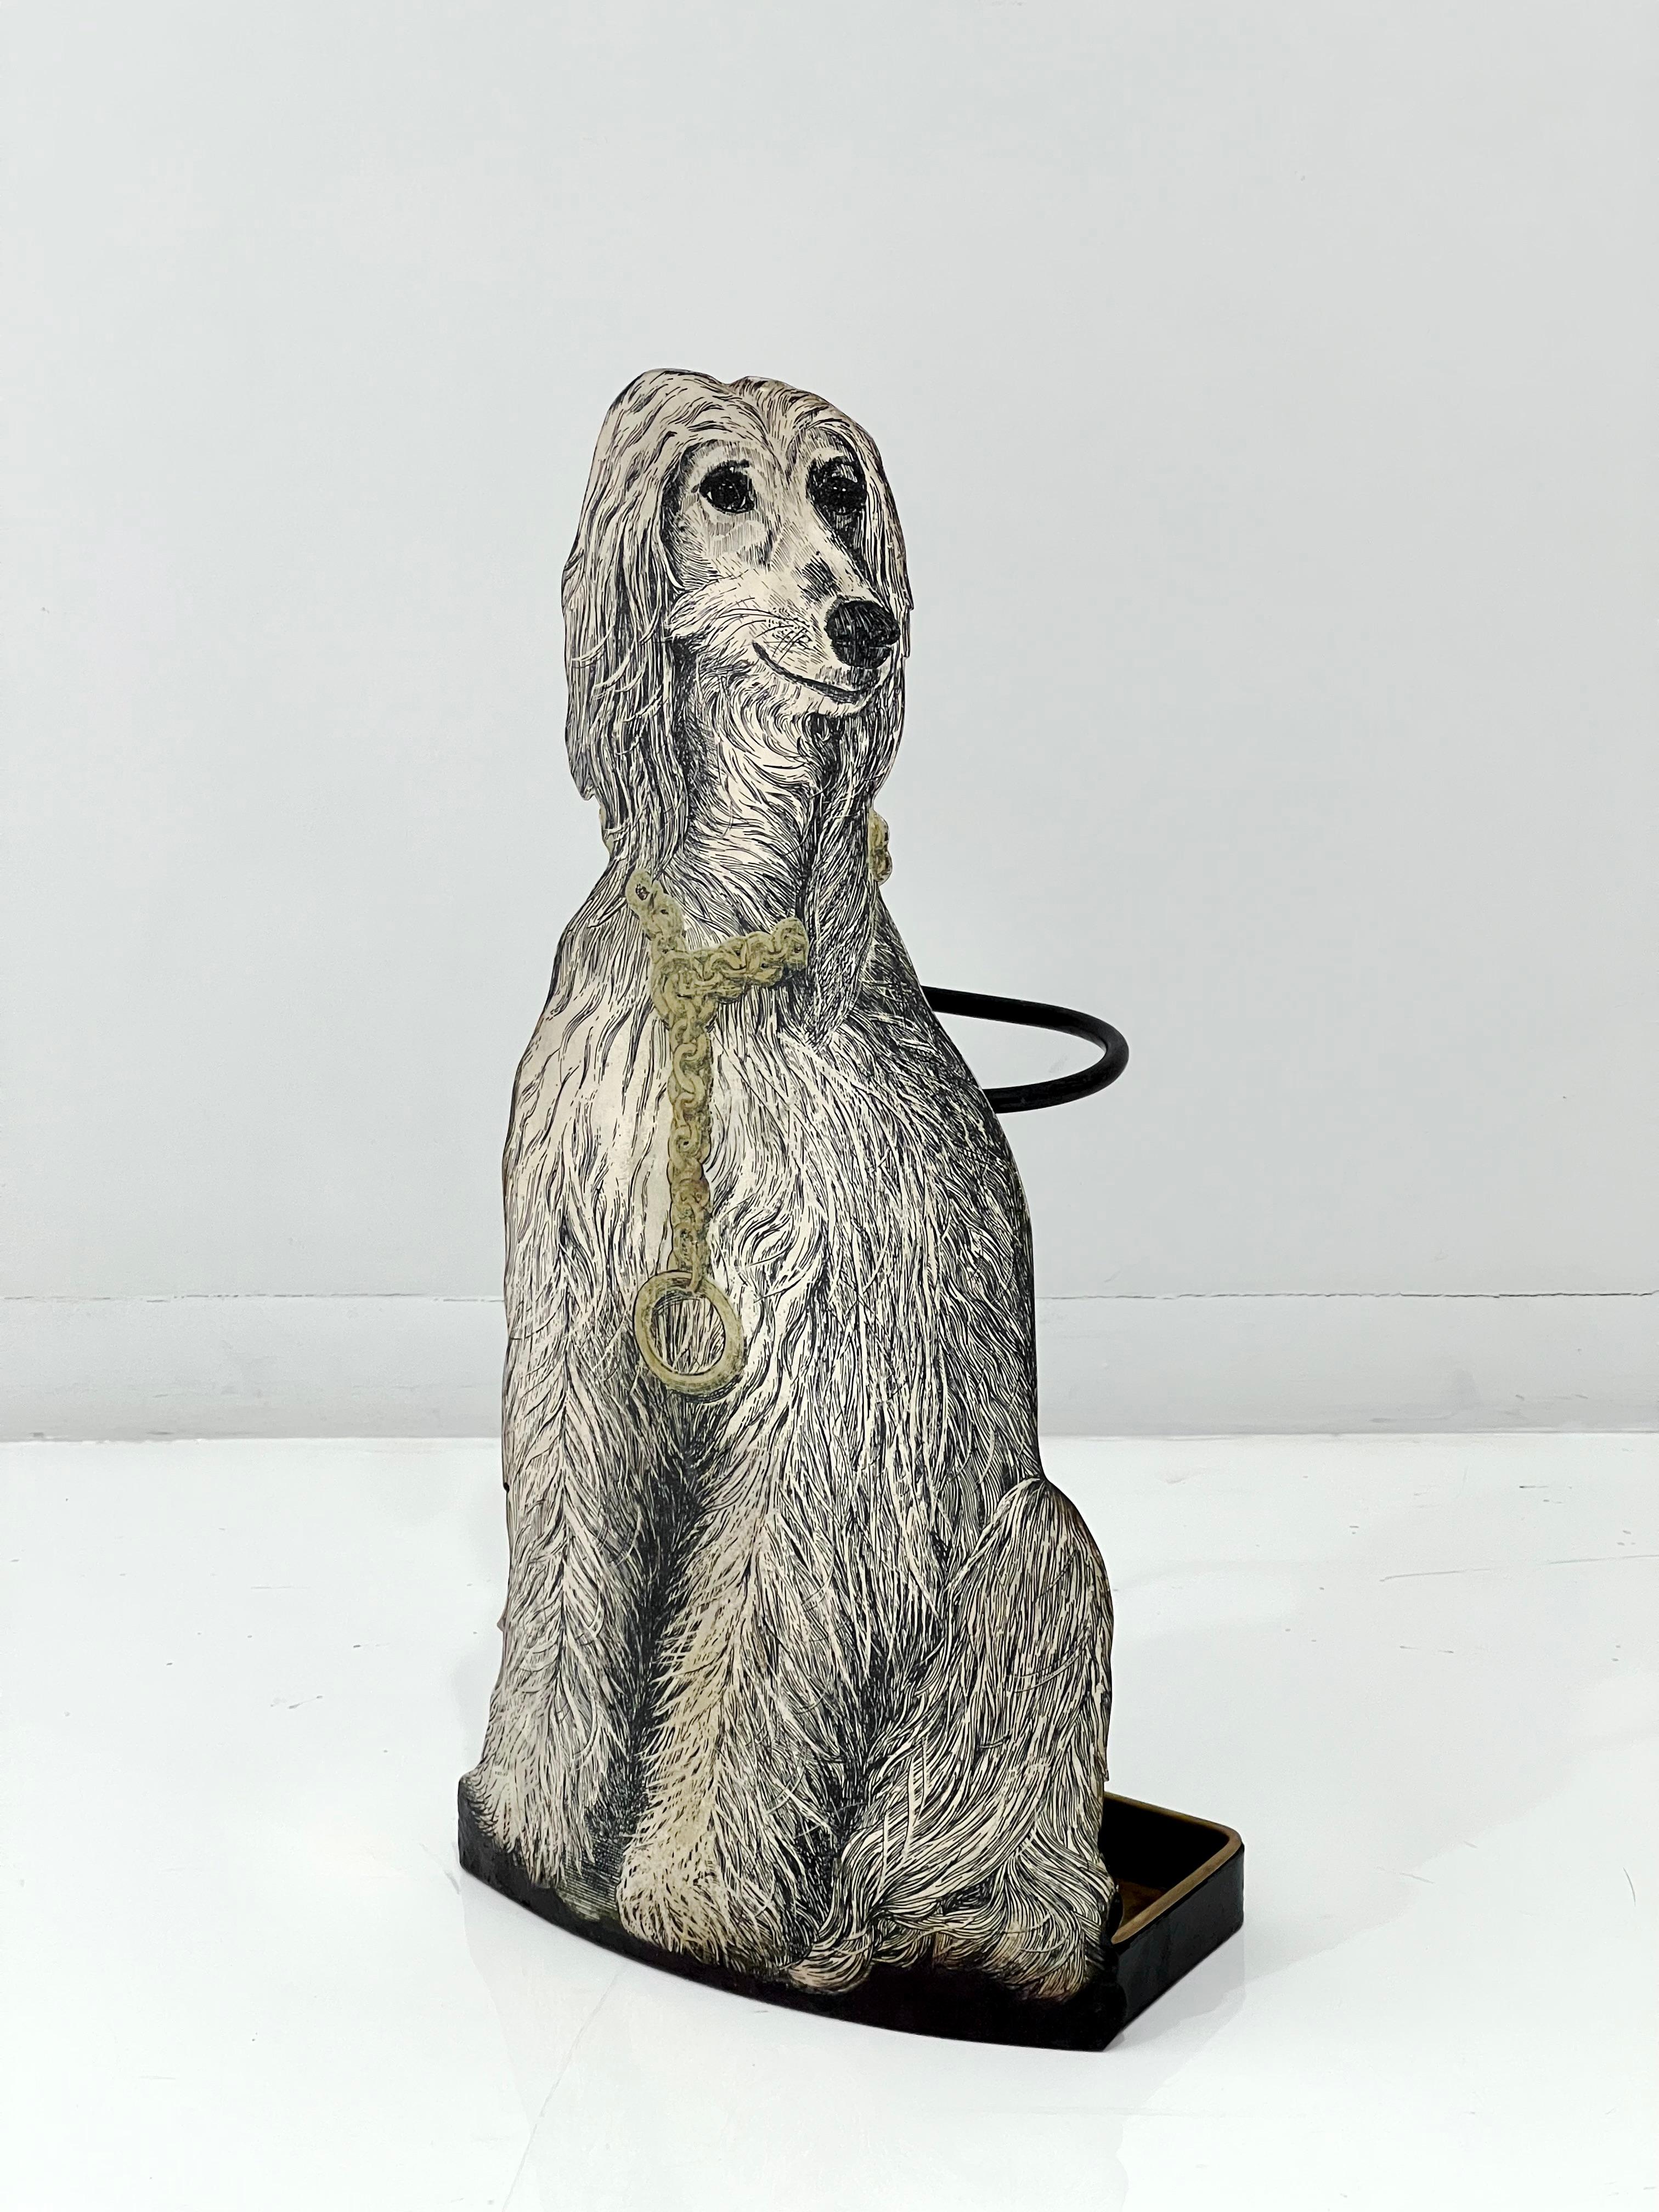 Ravissant porte-parapluie de Piero Fornasetti représentant un chien afghan. Italie 1962, avec égouttoir à l'arrière.